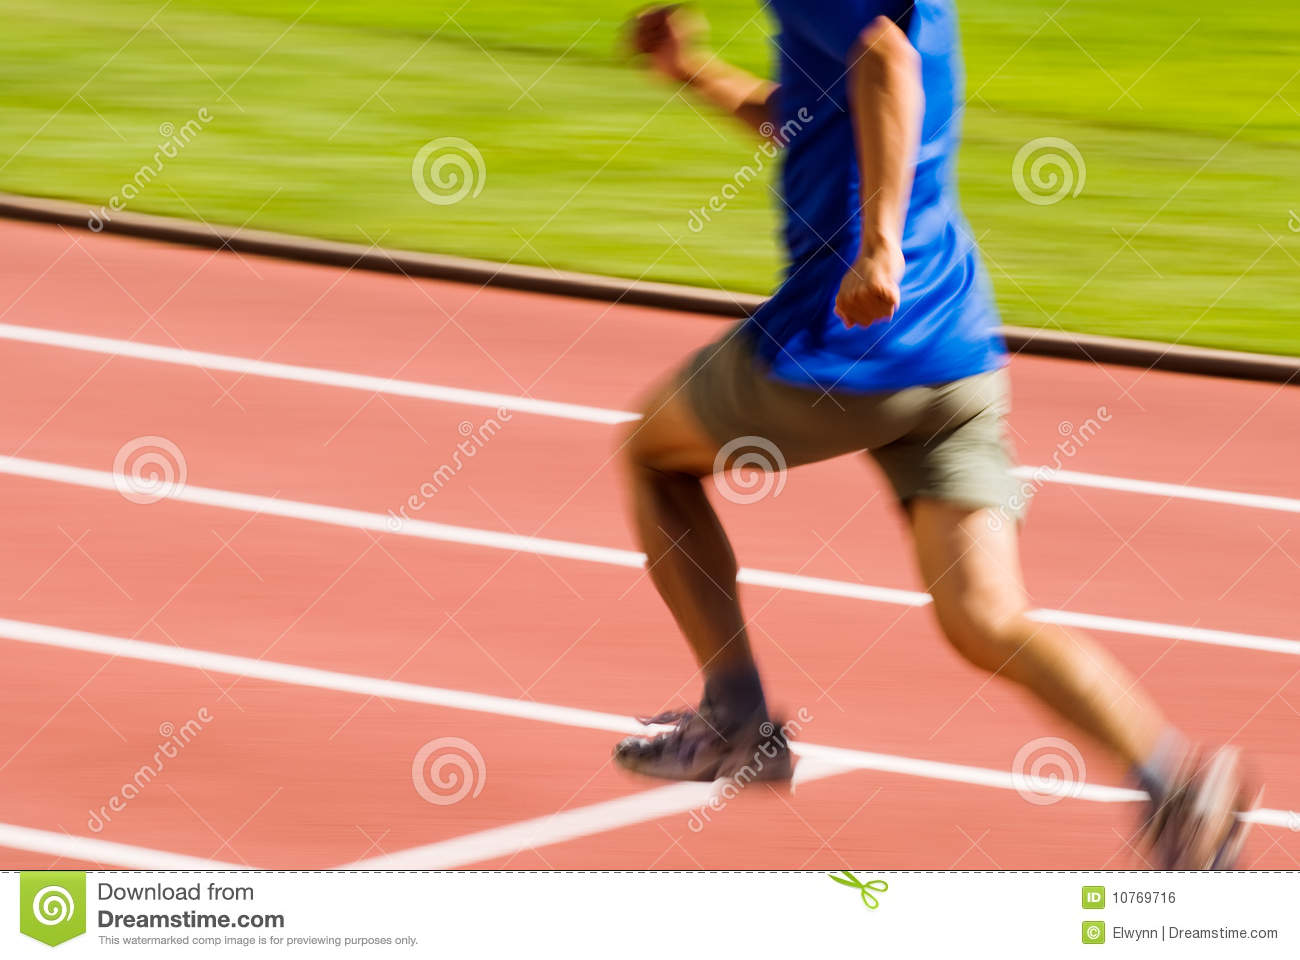 Running Blur Sporter Royalty Free Stock Image   Image  10769716